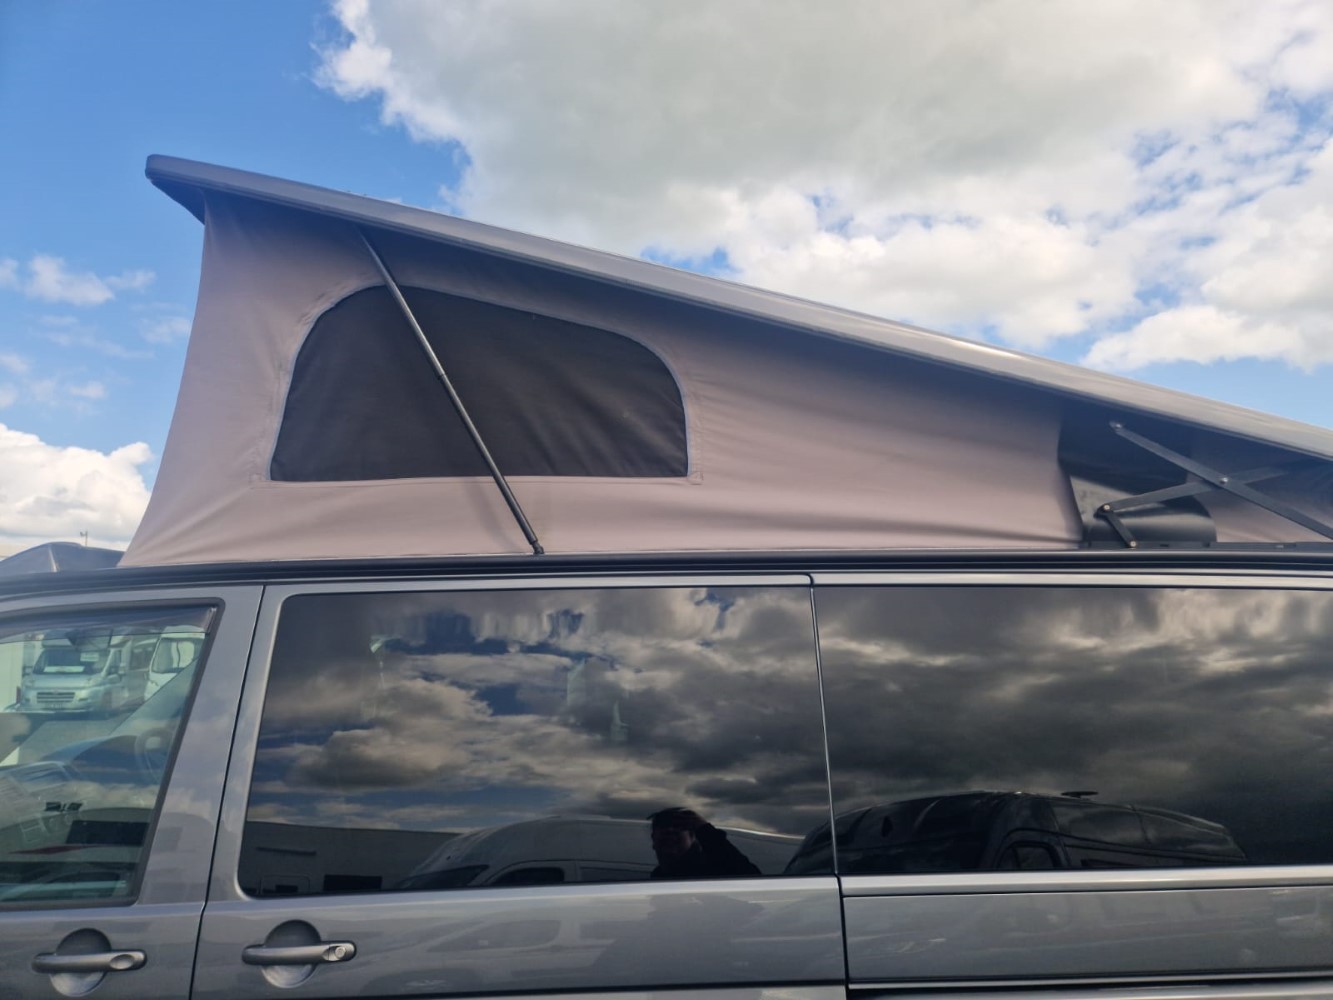 Volkswagen Cosy Camper